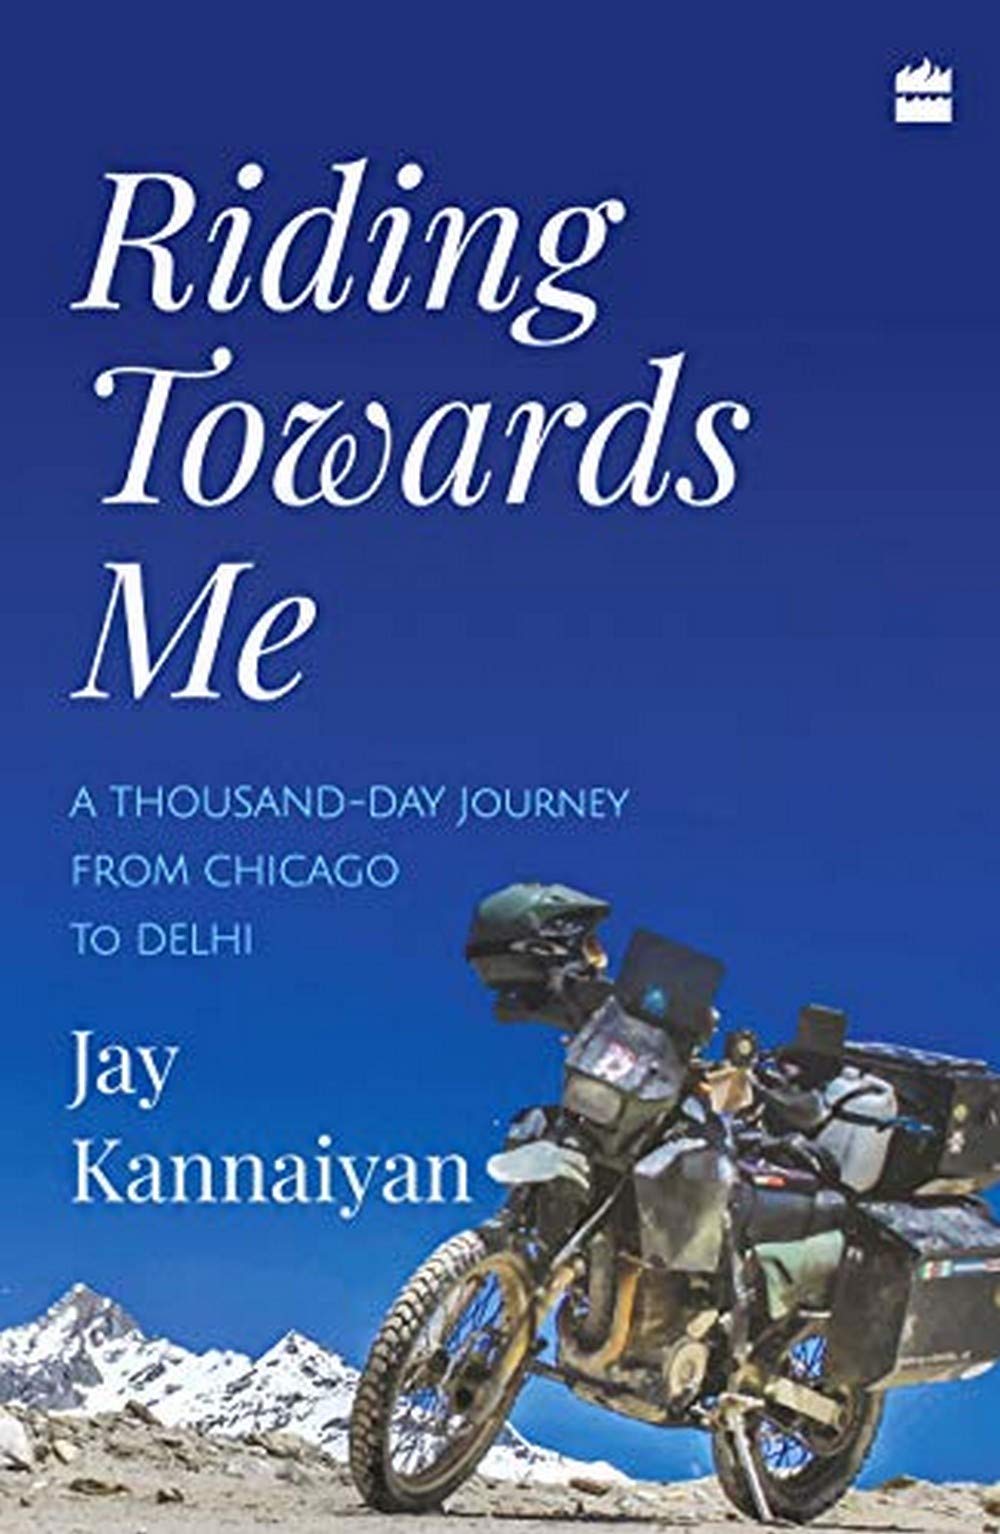 Riding towards me | Jay Kannaiyan